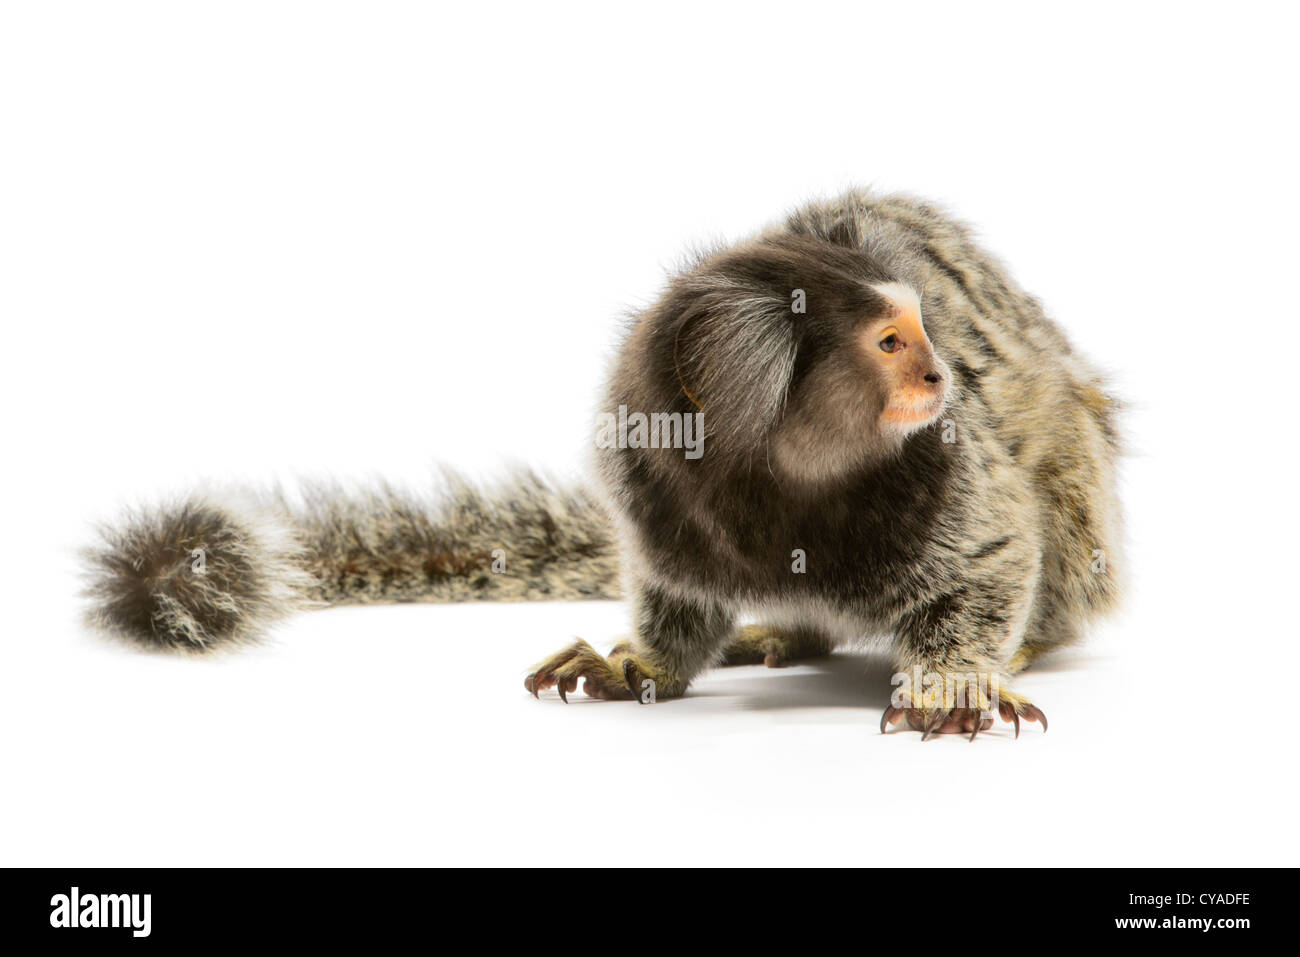 Marmoset monkey on white background Stock Photo